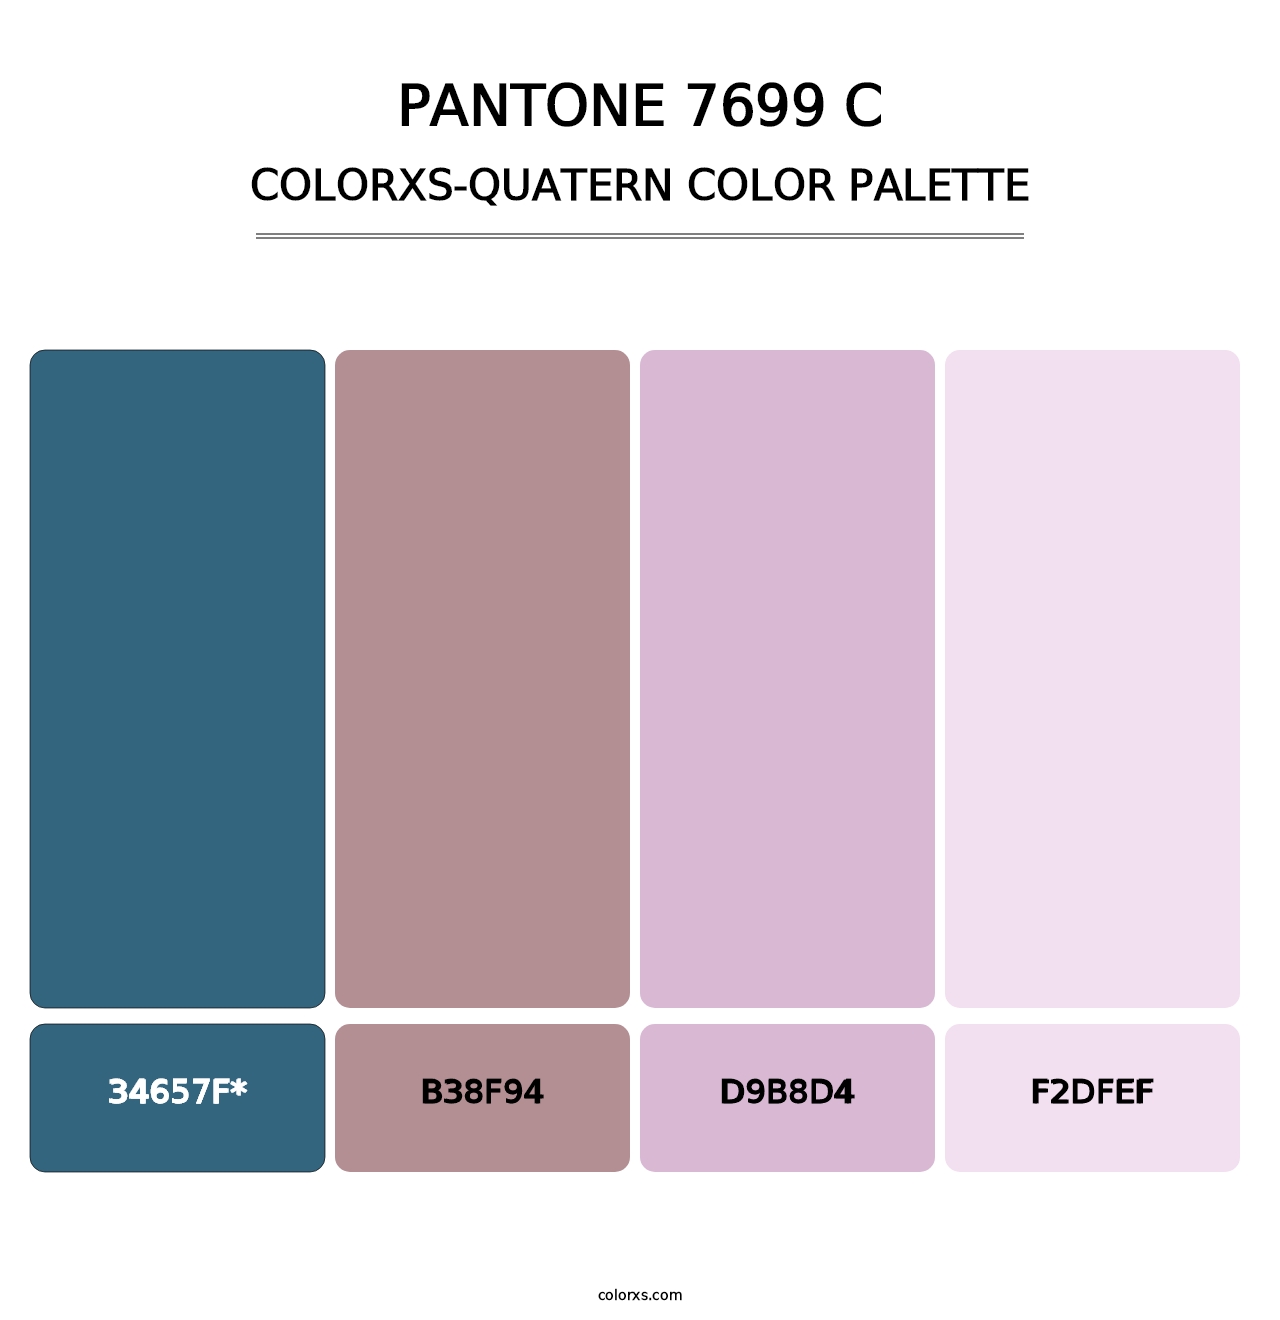 PANTONE 7699 C - Colorxs Quatern Palette